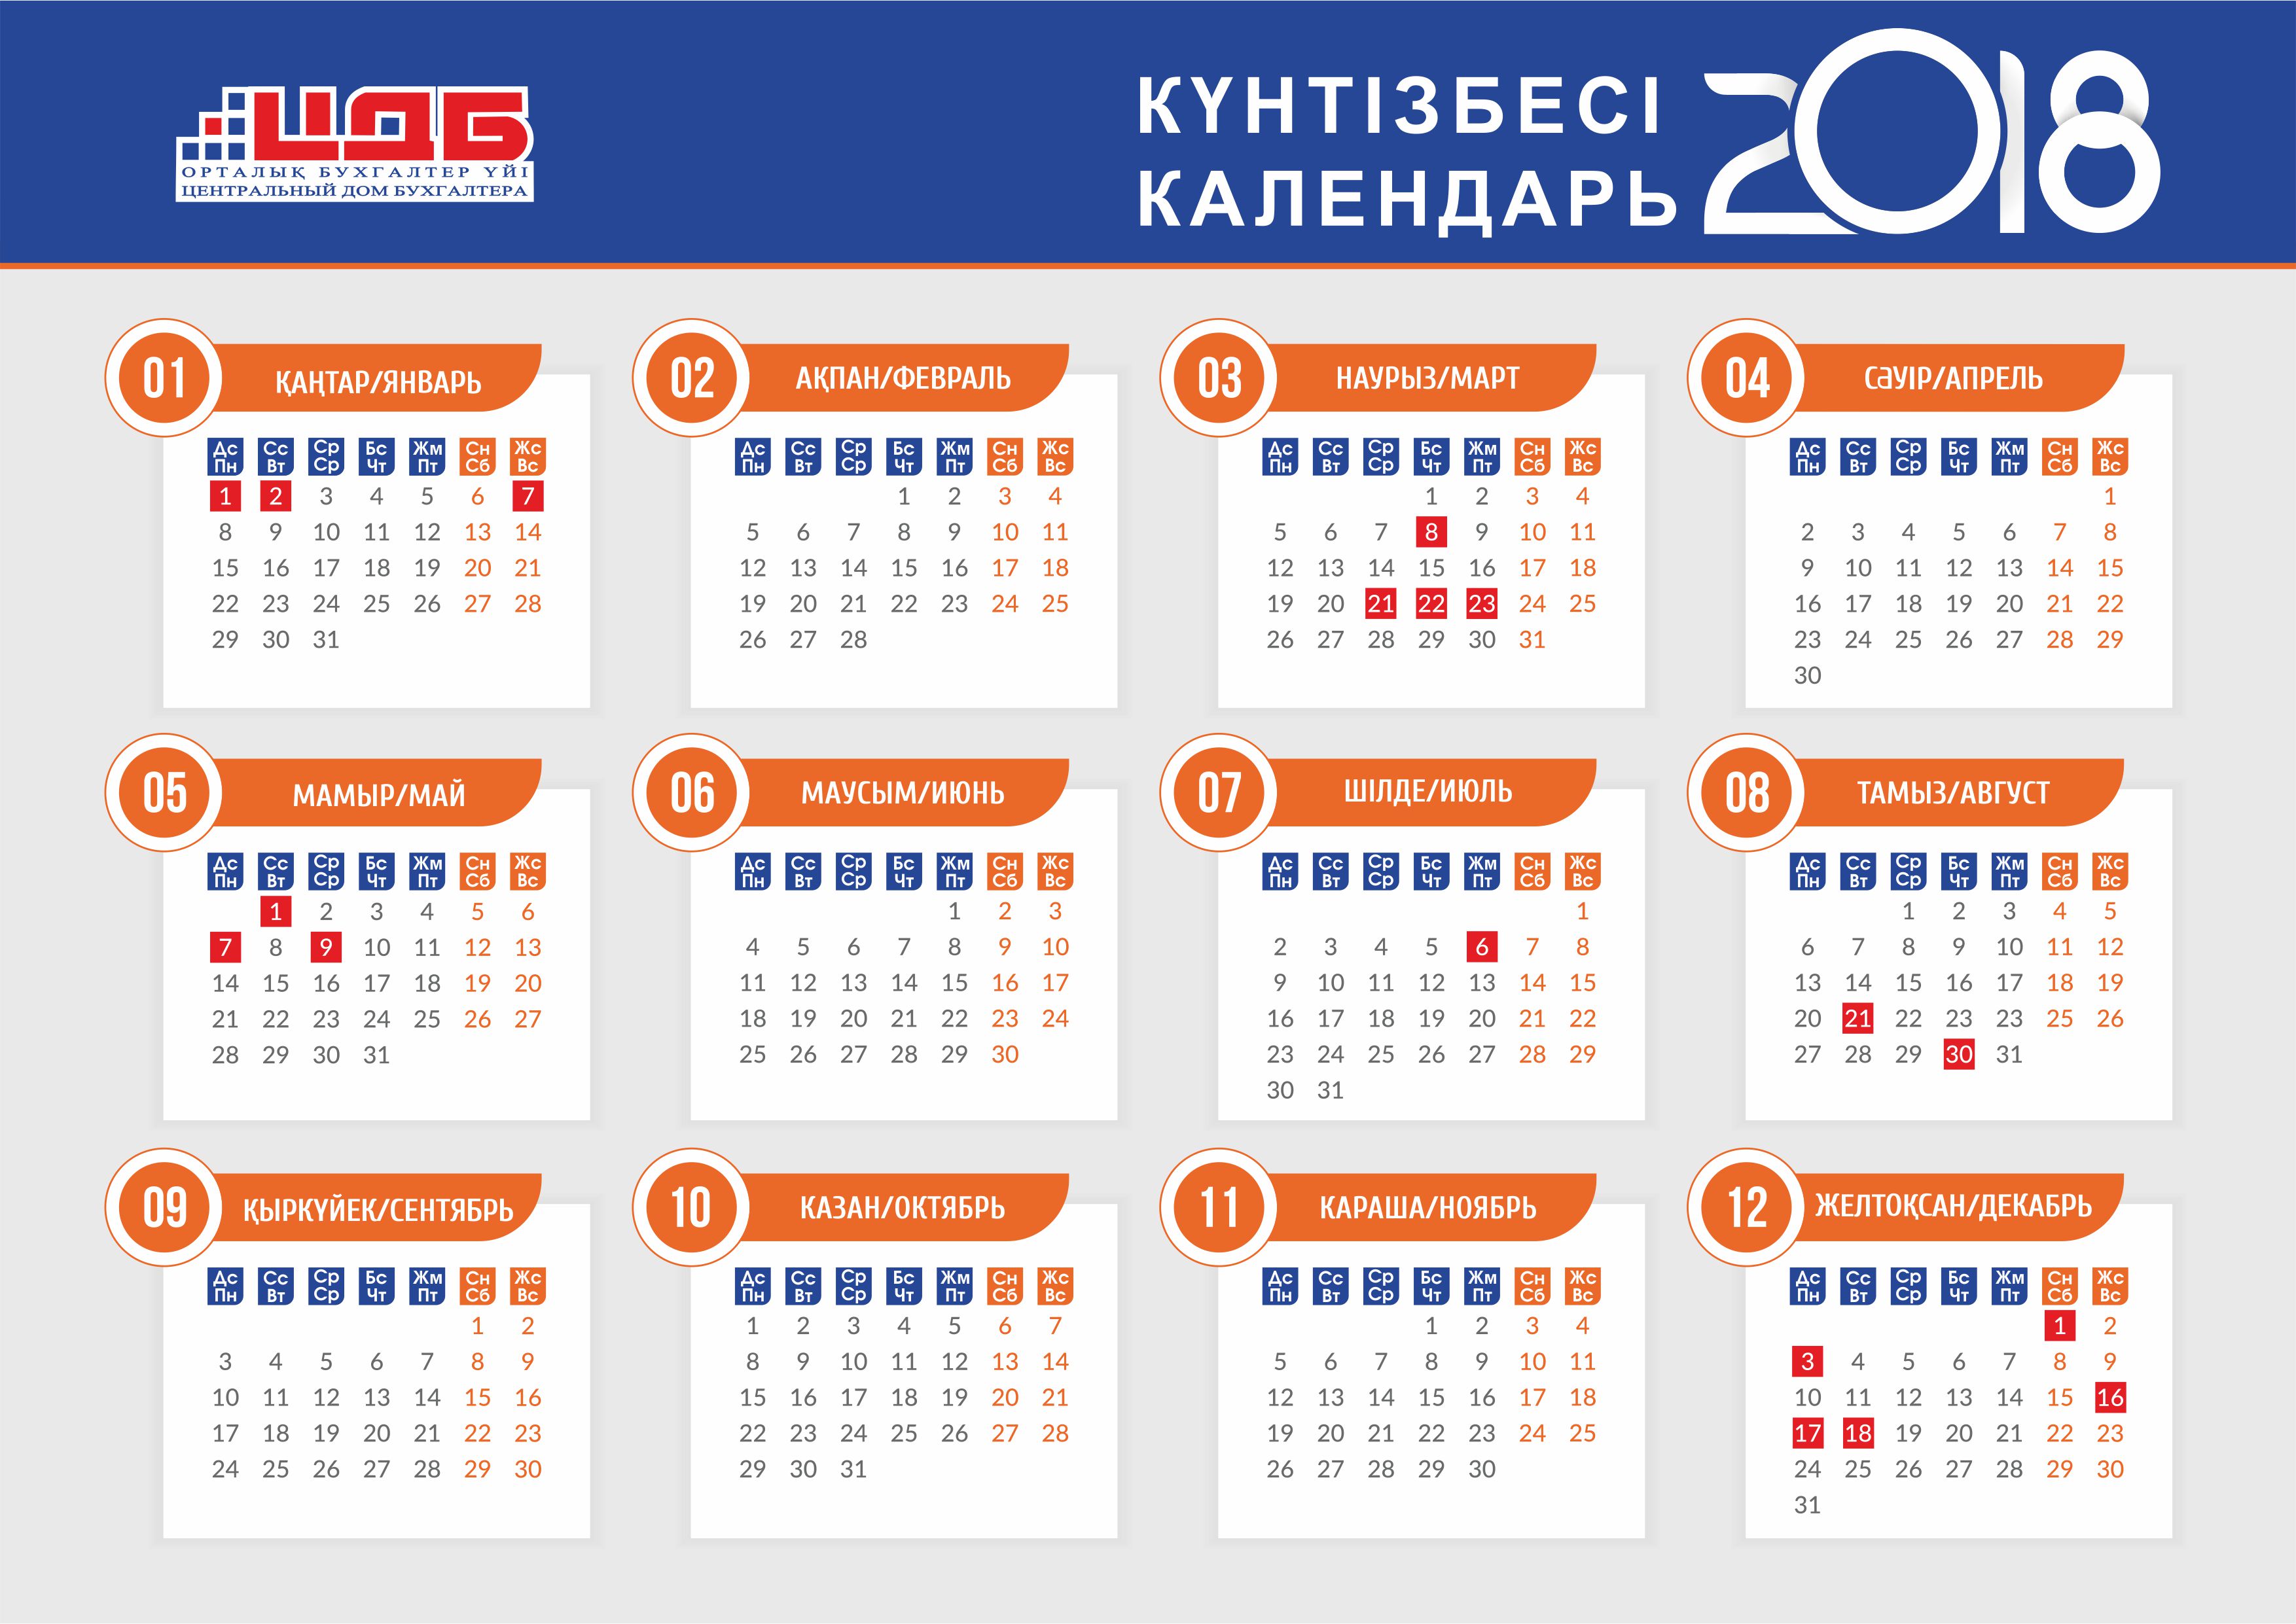 Календарь праздников в республике казахстан 2022 — электронный журнал reallife.kz